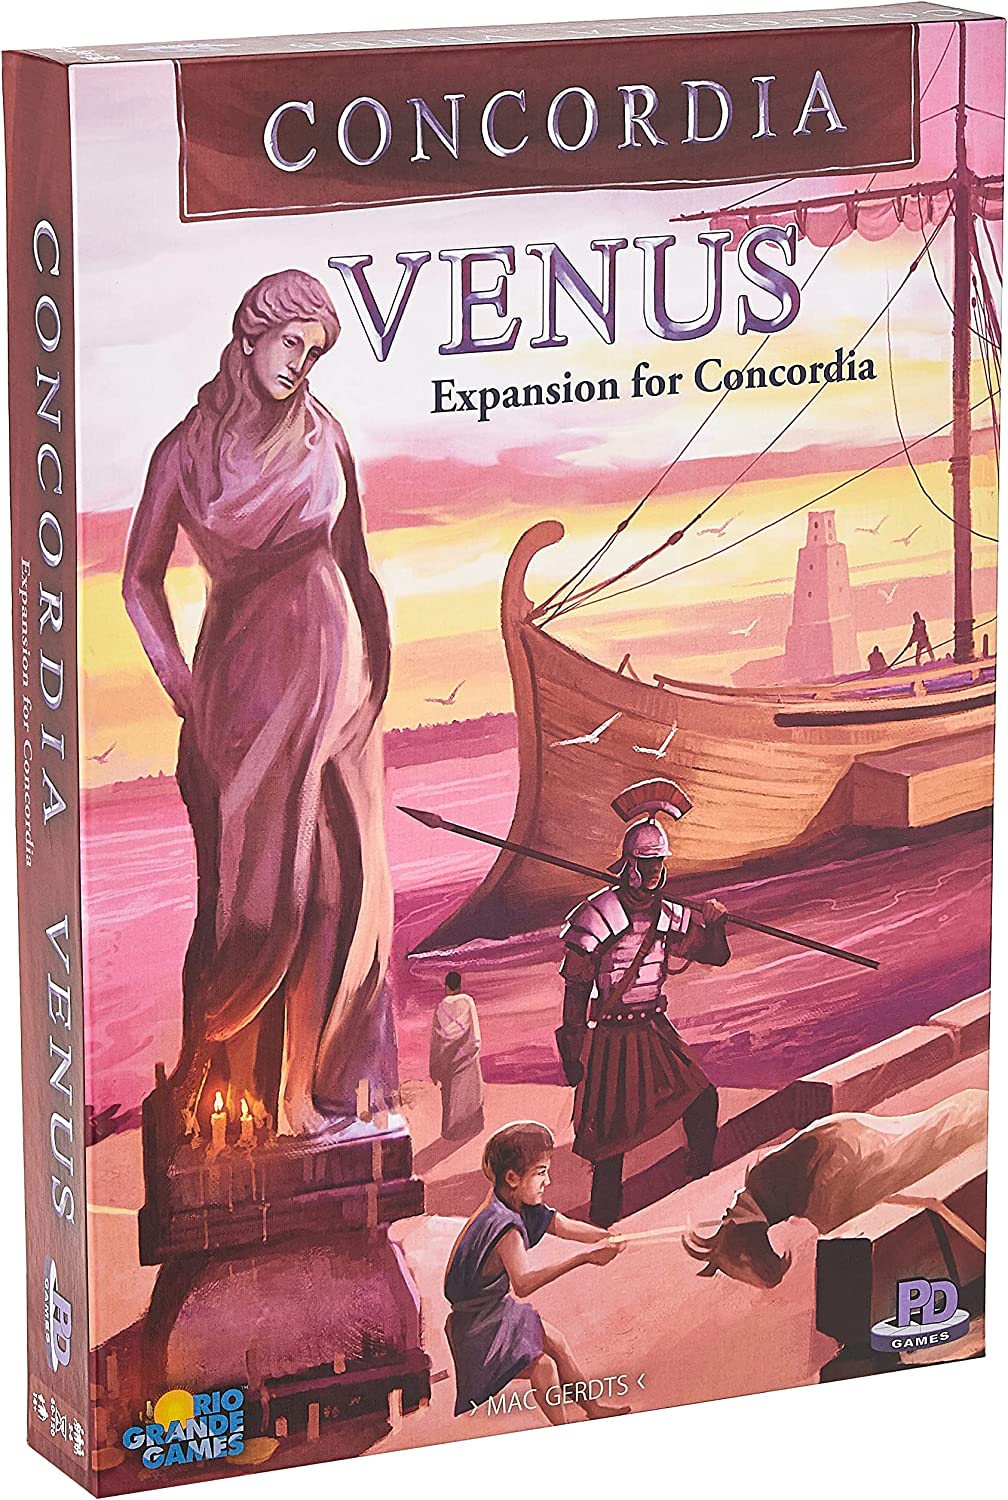 Concordia: Venus Expansion for Concordia